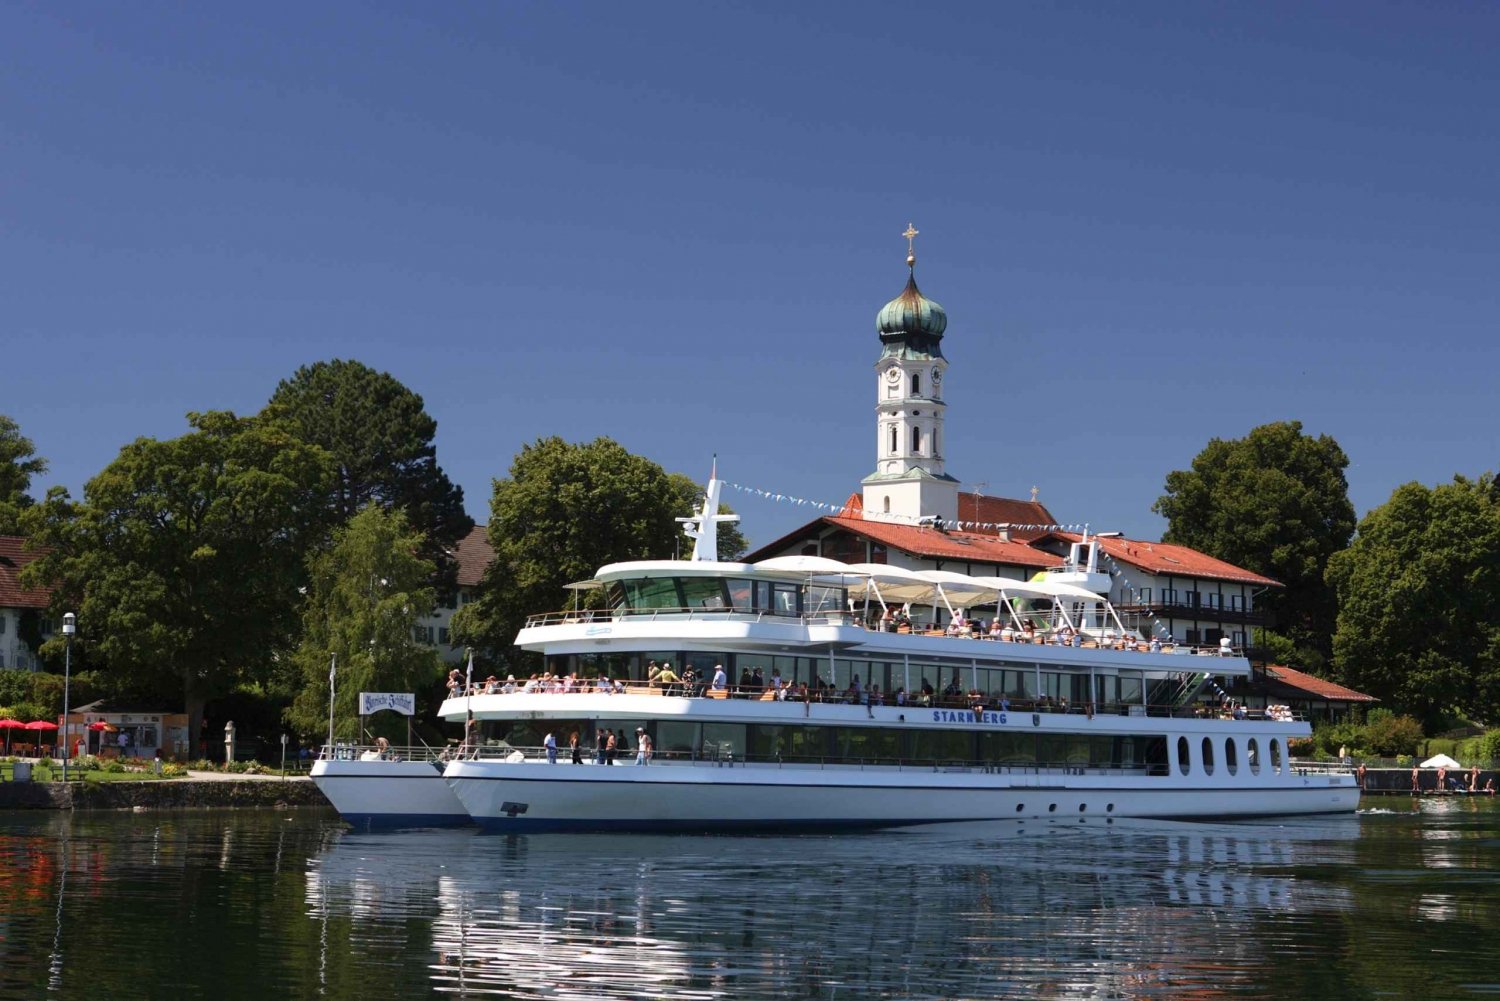 Munich: Royal Water Music on the Starnberg Lake